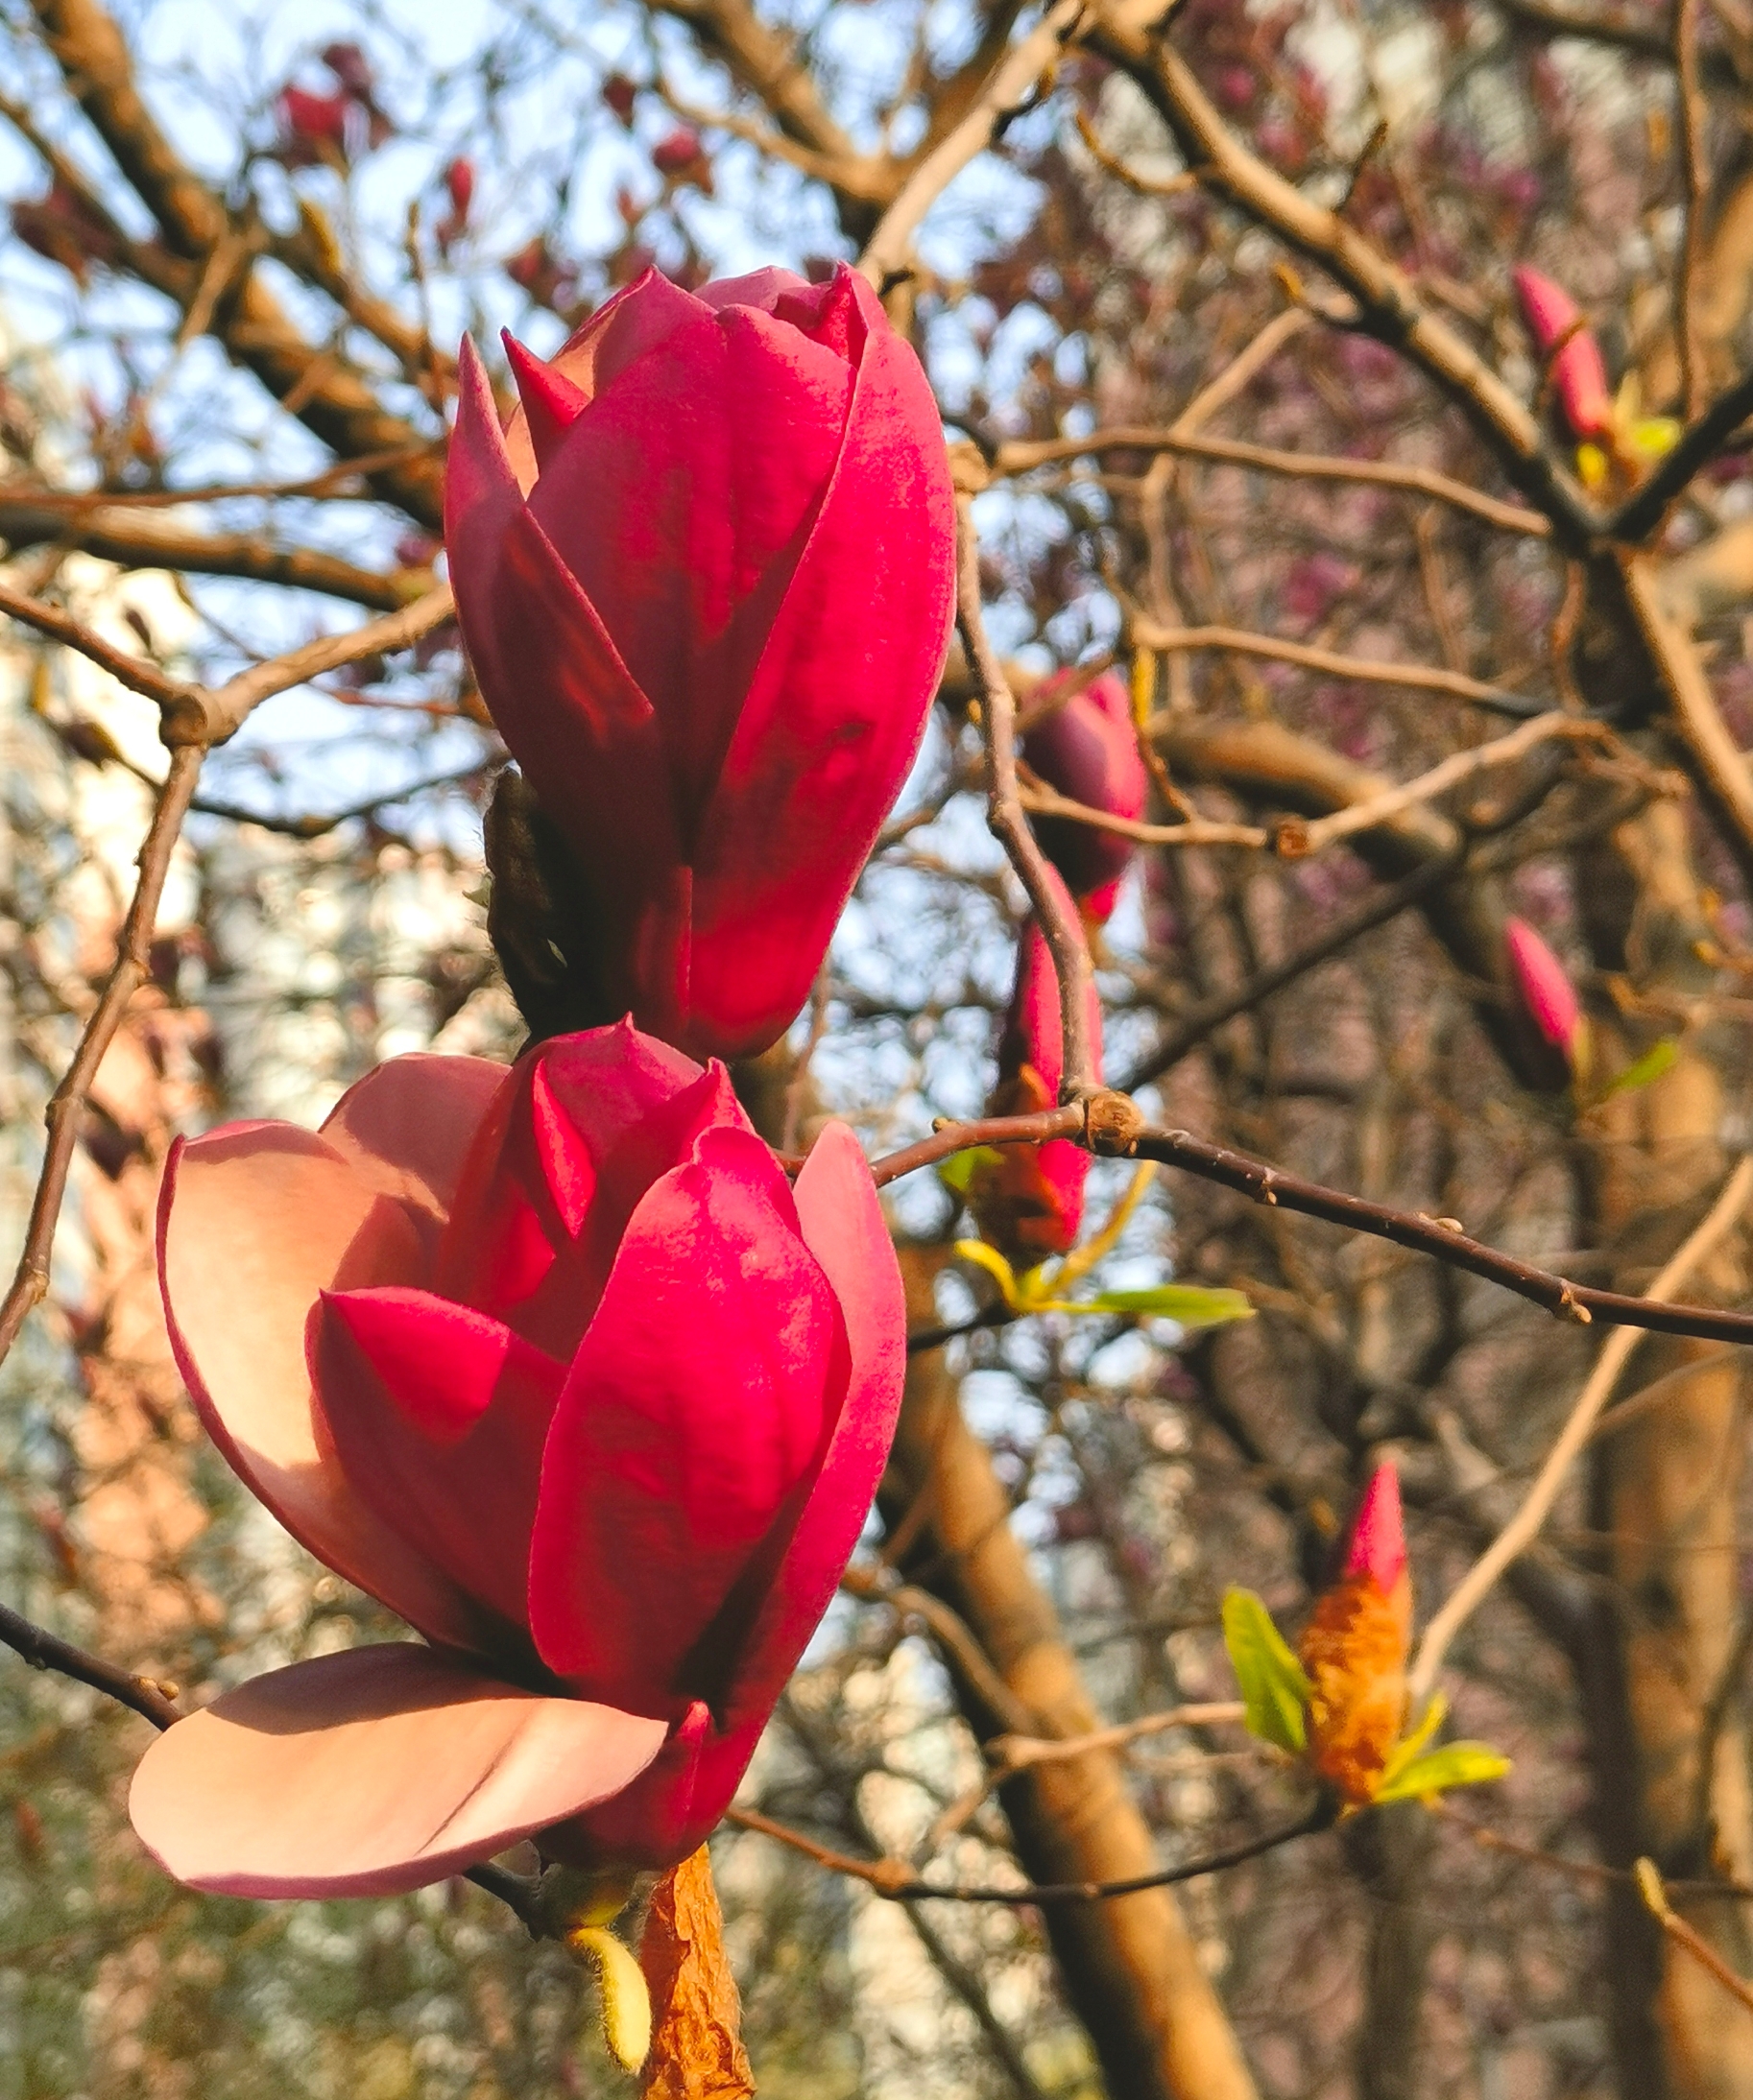 北京的春风是粗暴的，但花草树木却不辜负春的召唤。